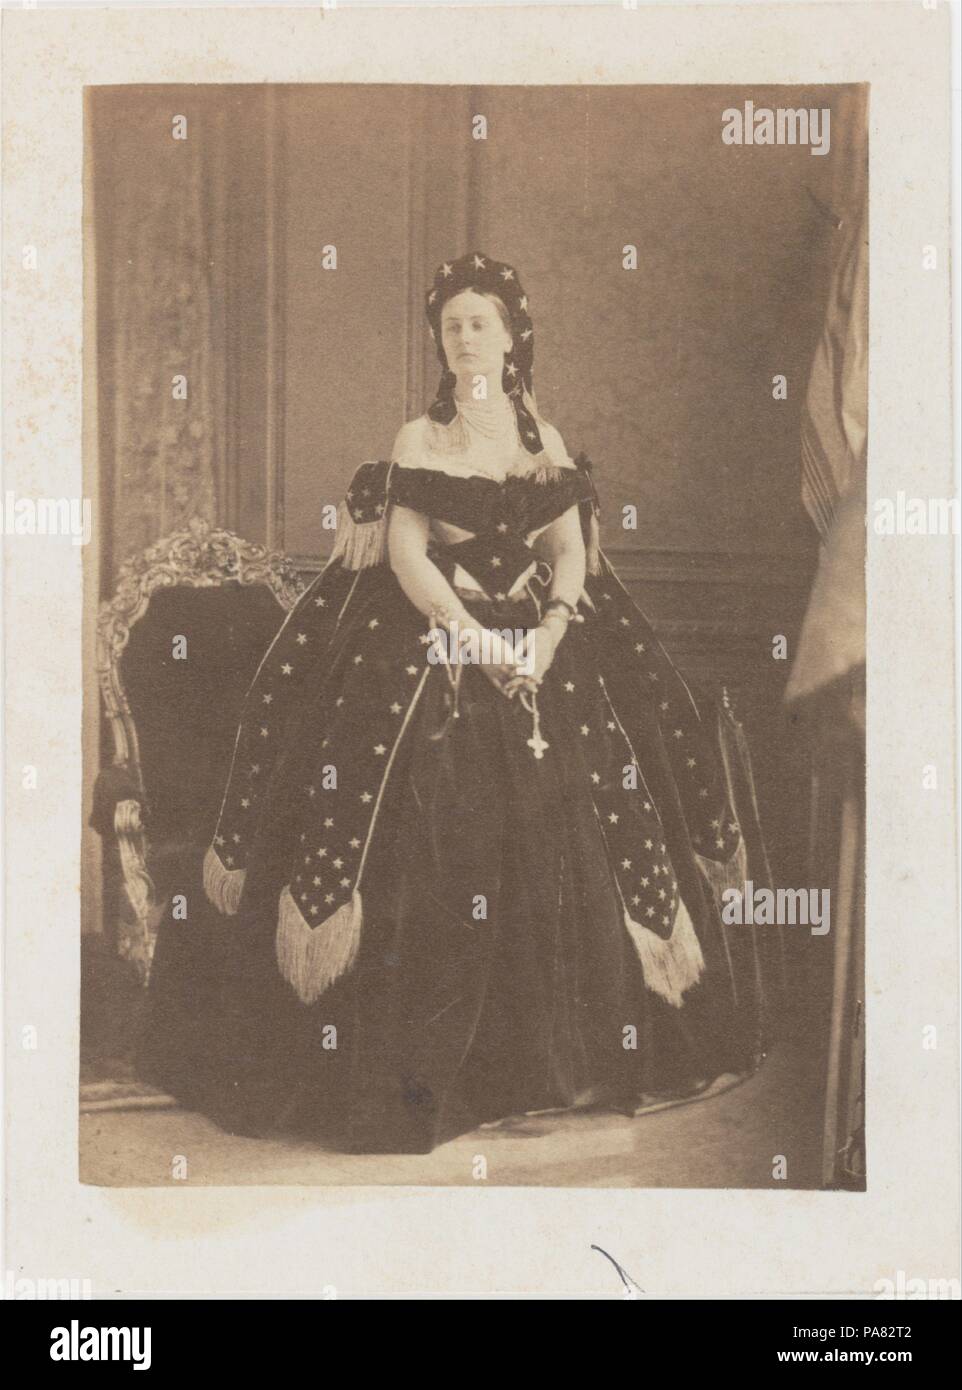 La Comtesse de Castiglione en Reine de la Nuit. Artist: Pierre-Louis Pierson (French, 1822-1913). Dimensions: Image: 10.5 x 7.4 cm (4 1/8 x 2 15/16 in.)  Mount: 12.2 x 9 cm (4 13/16 x 3 9/16 in.)  Mat: 35.6 x 27.9 cm (14 x 11 in.). Person in Photograph: Countess Virginia Oldoini Verasis di Castiglione (1835-1899). Date: 1863-67. Museum: Metropolitan Museum of Art, New York, USA. Stock Photo